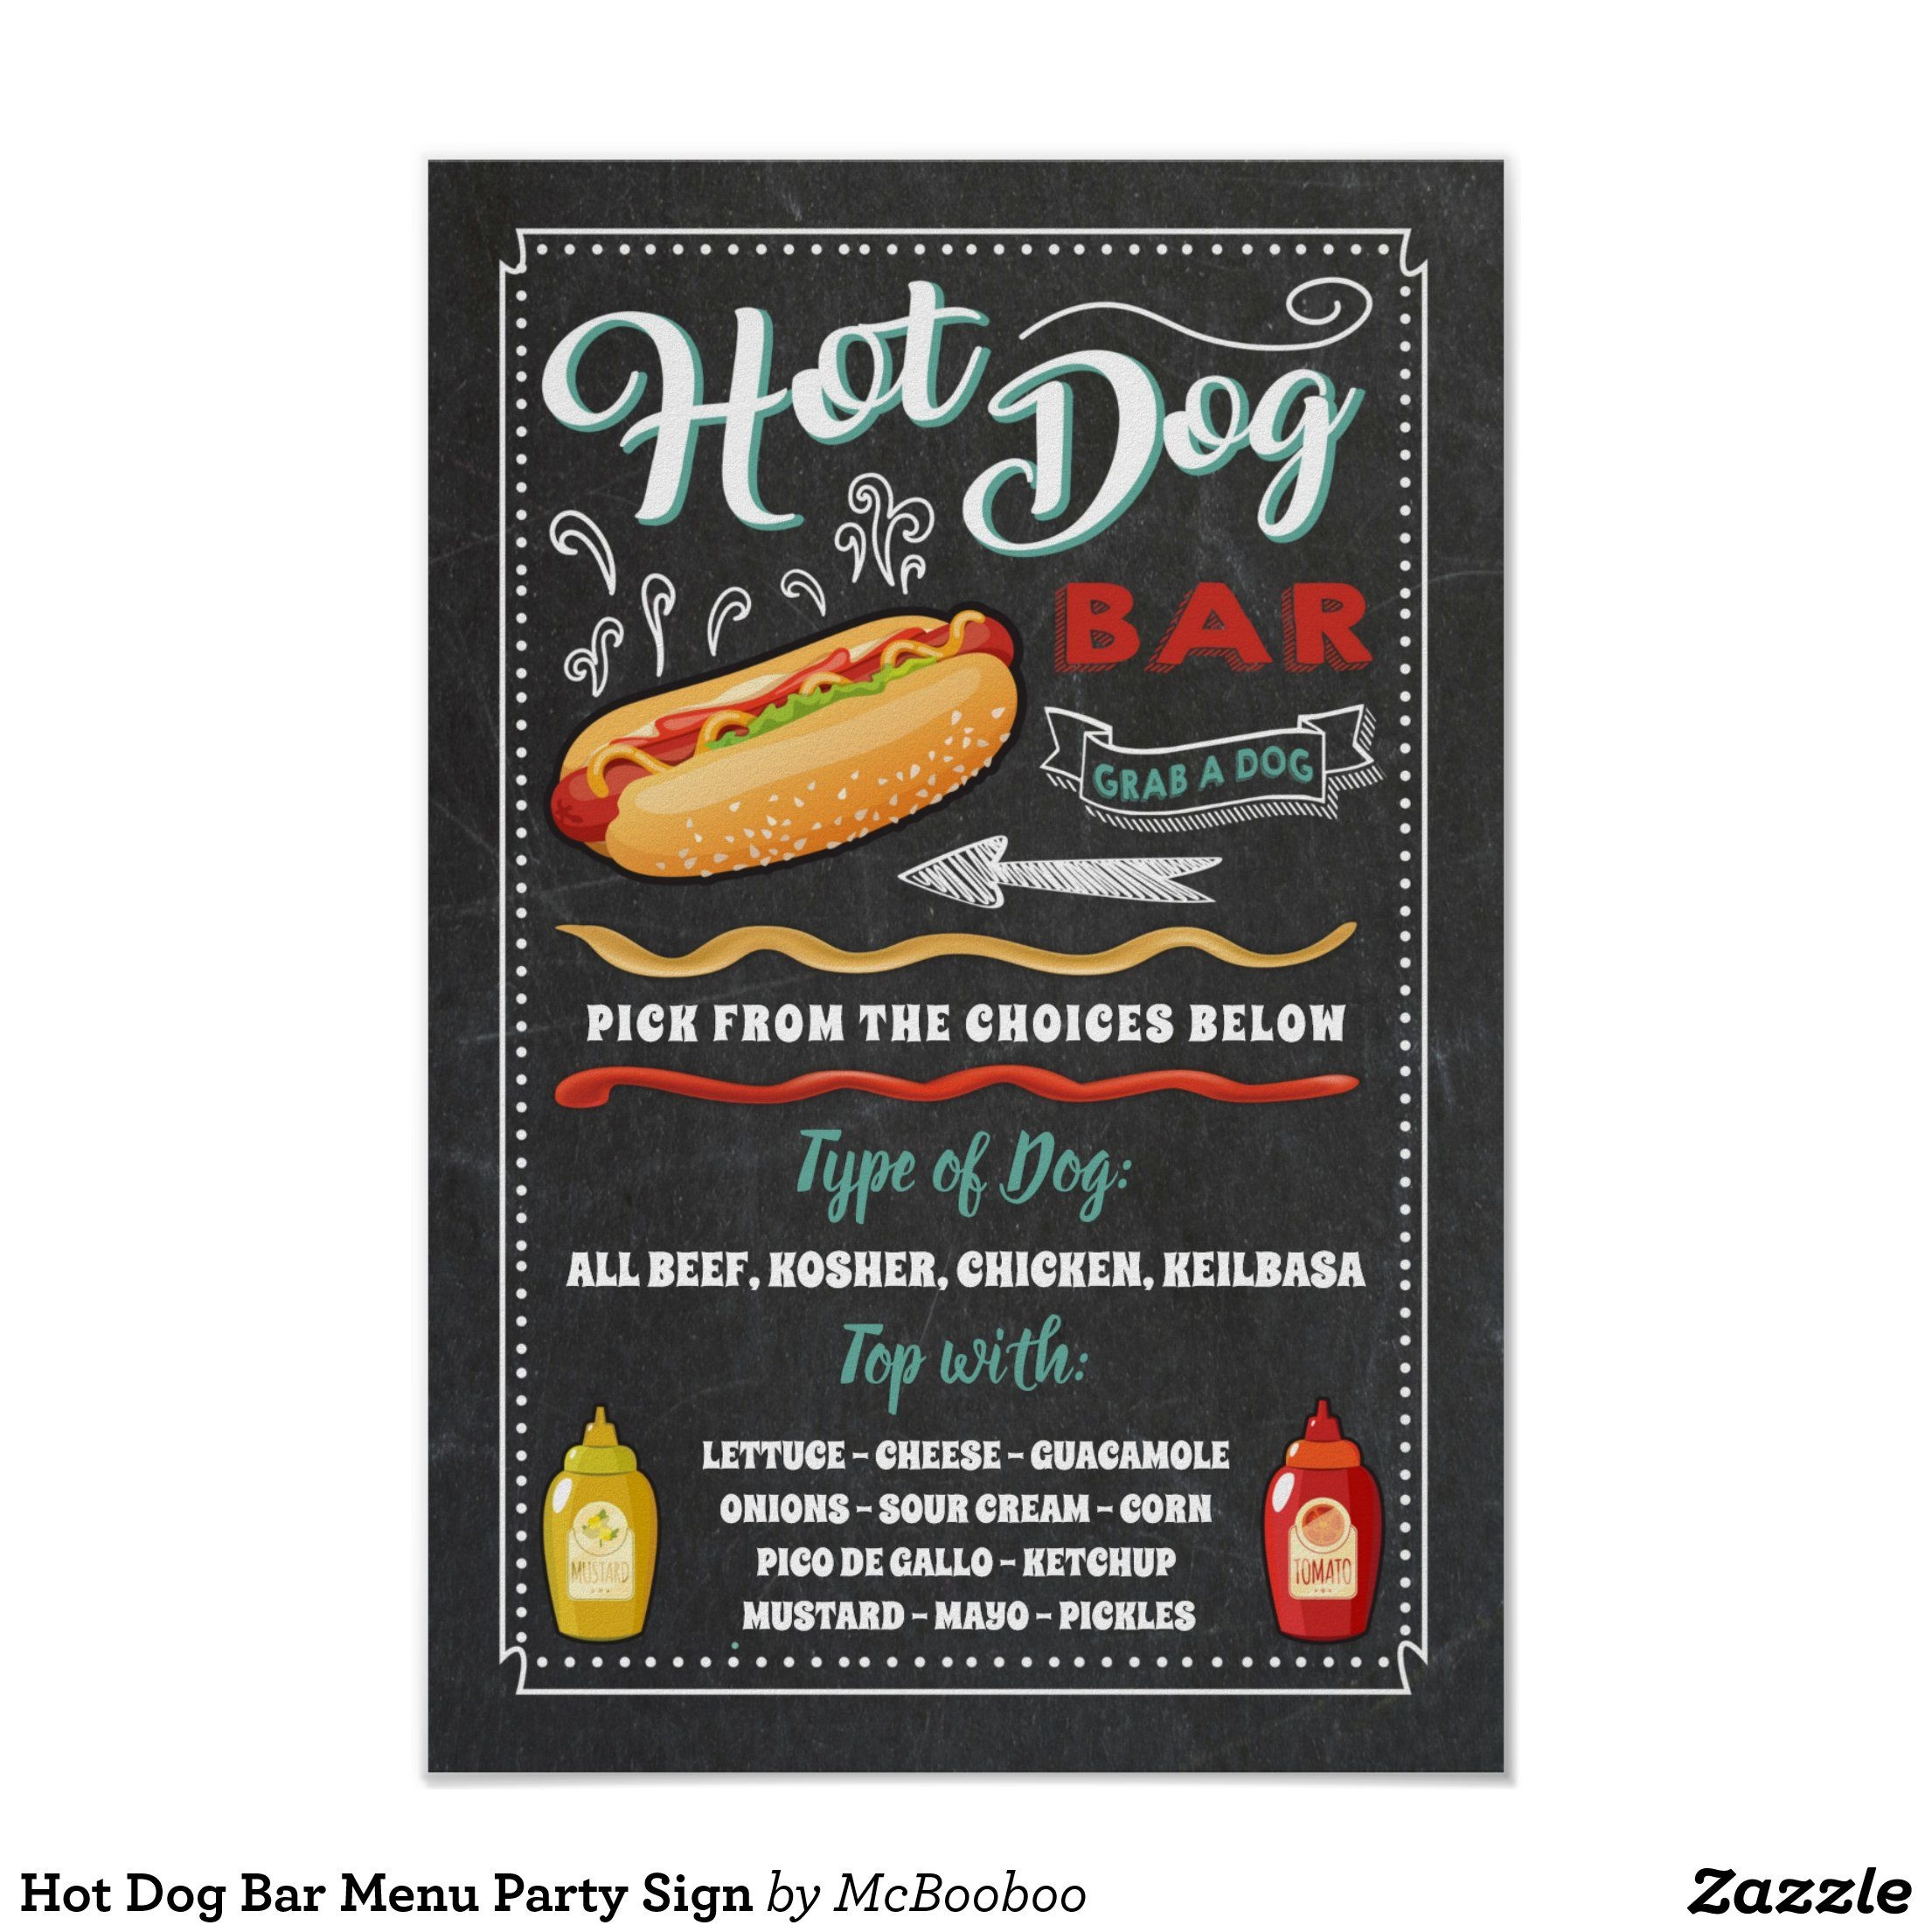 Hot Dog Bar Menu Party Sign Zazzle Hot Dog Bar Hot Dog Bar Menu Hot Dogs